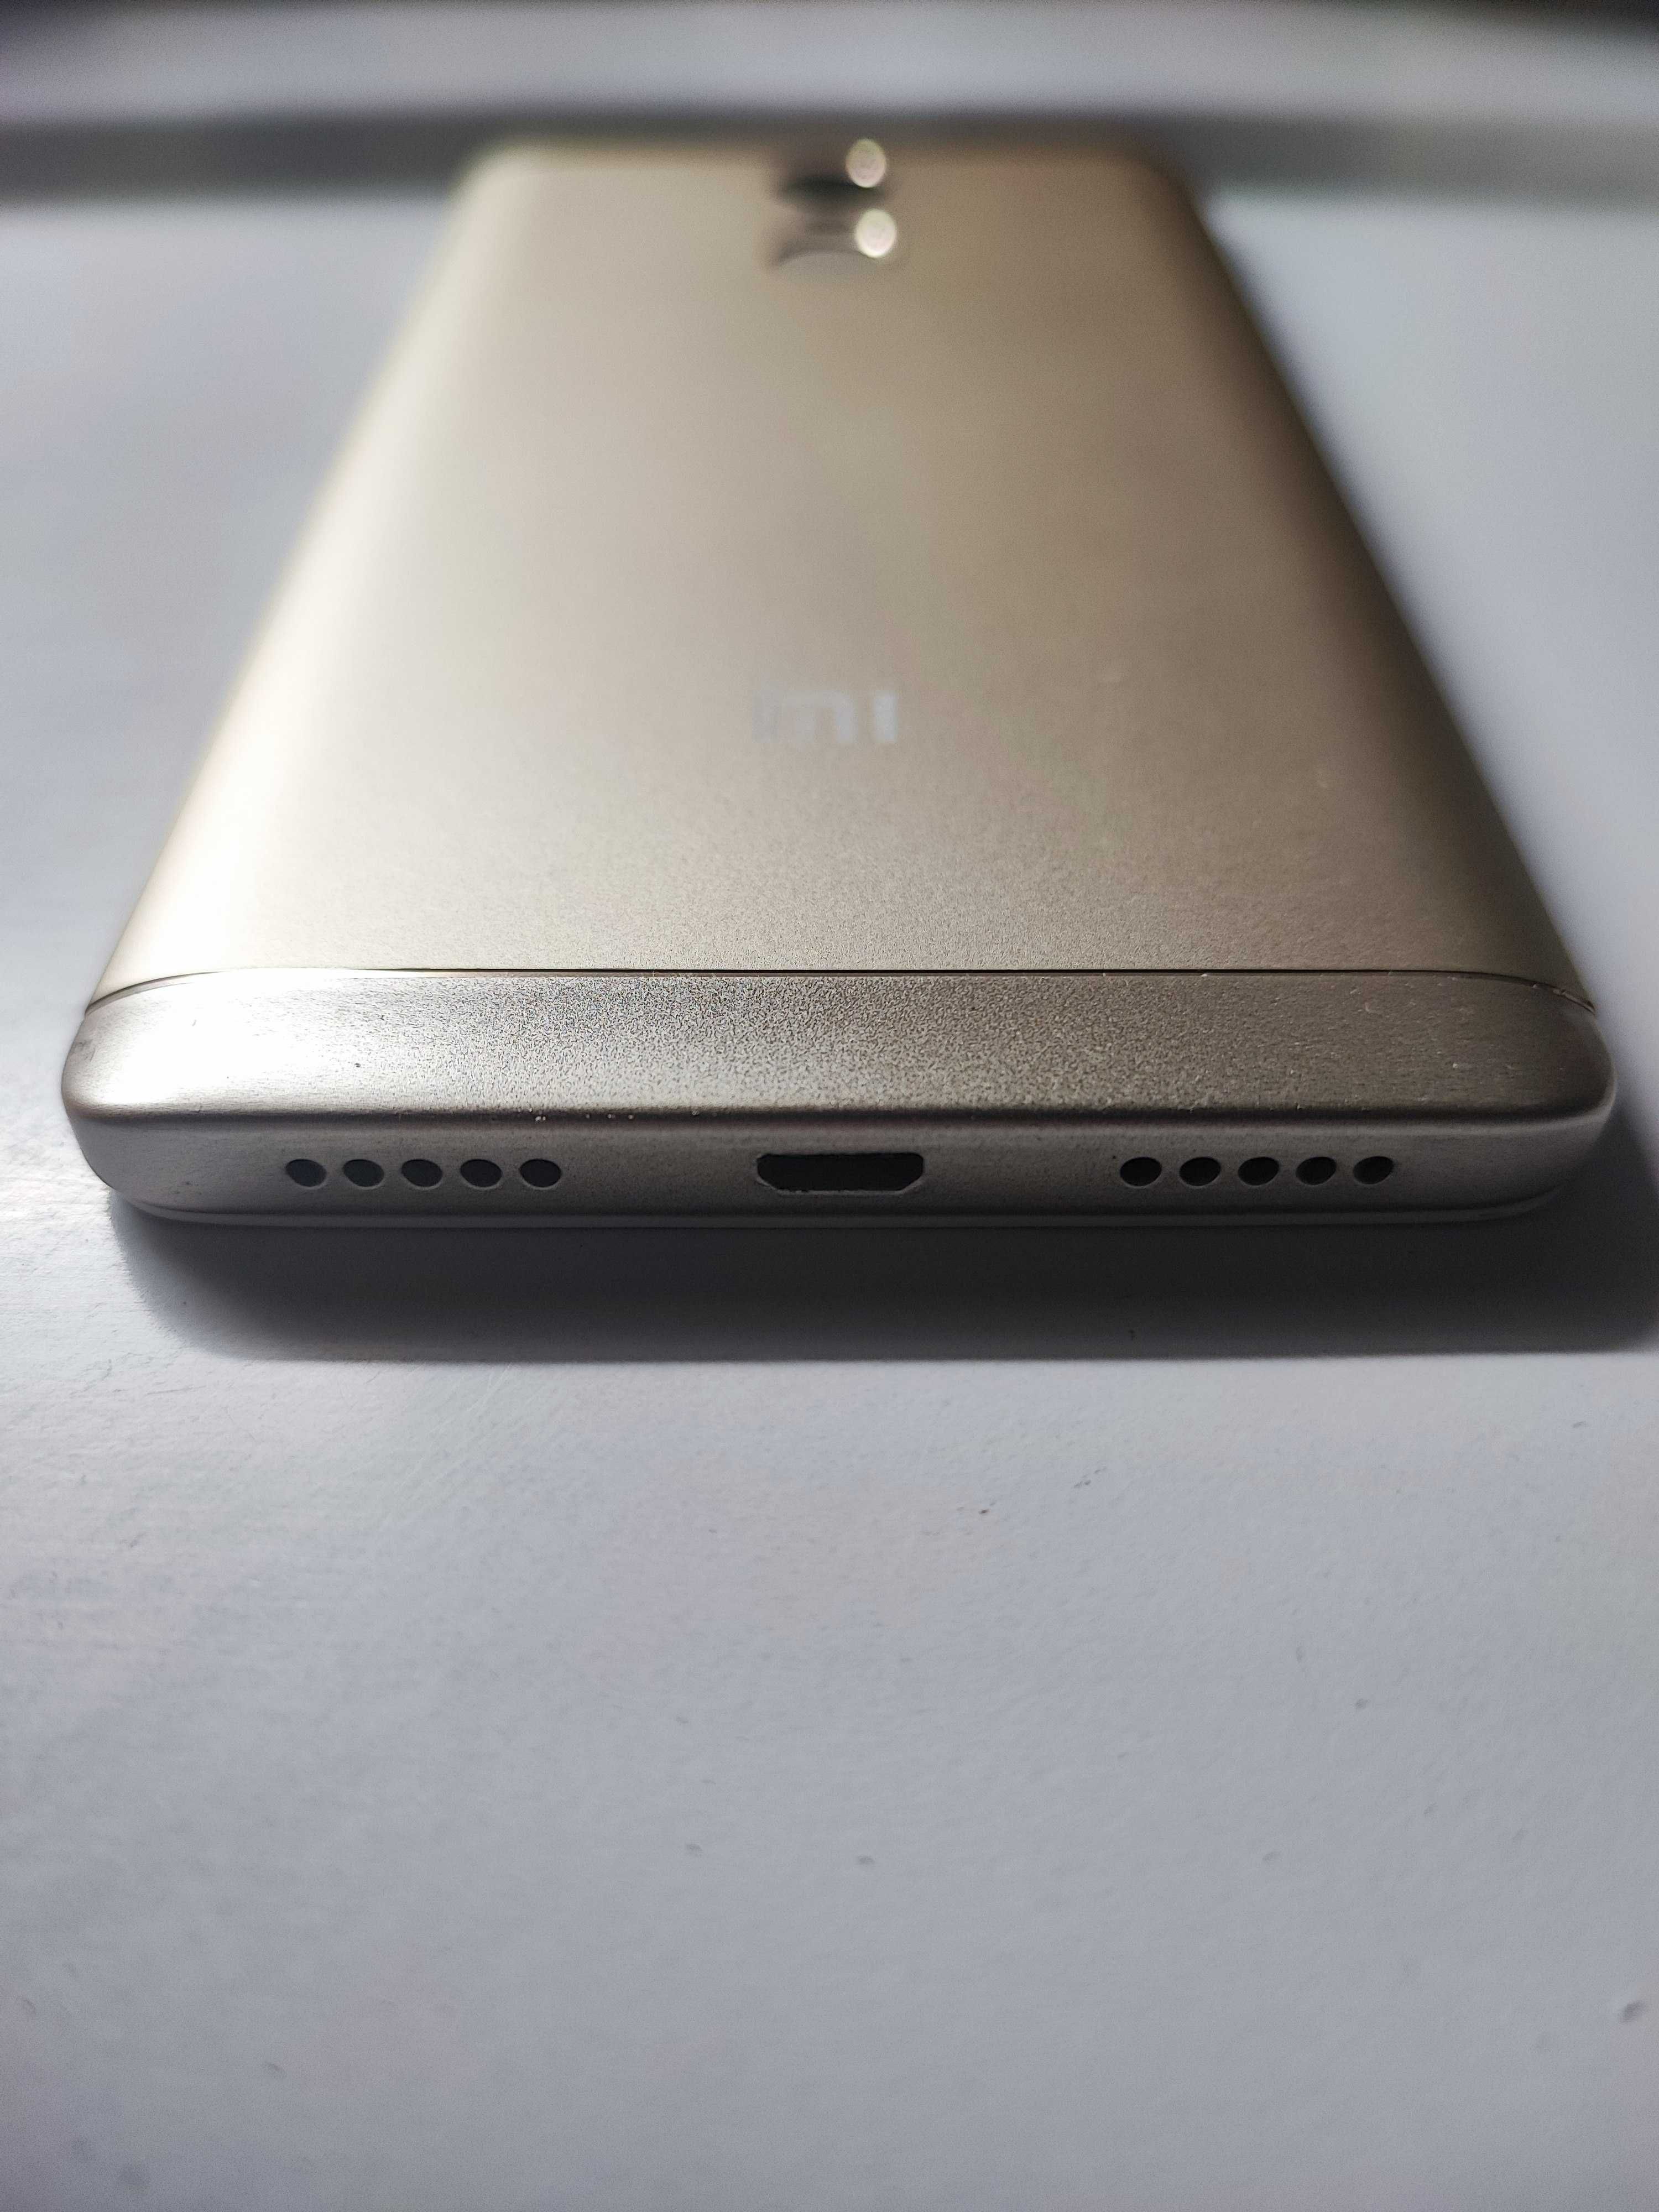 Xiaomi Redmi Note 4X Gold, Global version, состояние нового, комплект